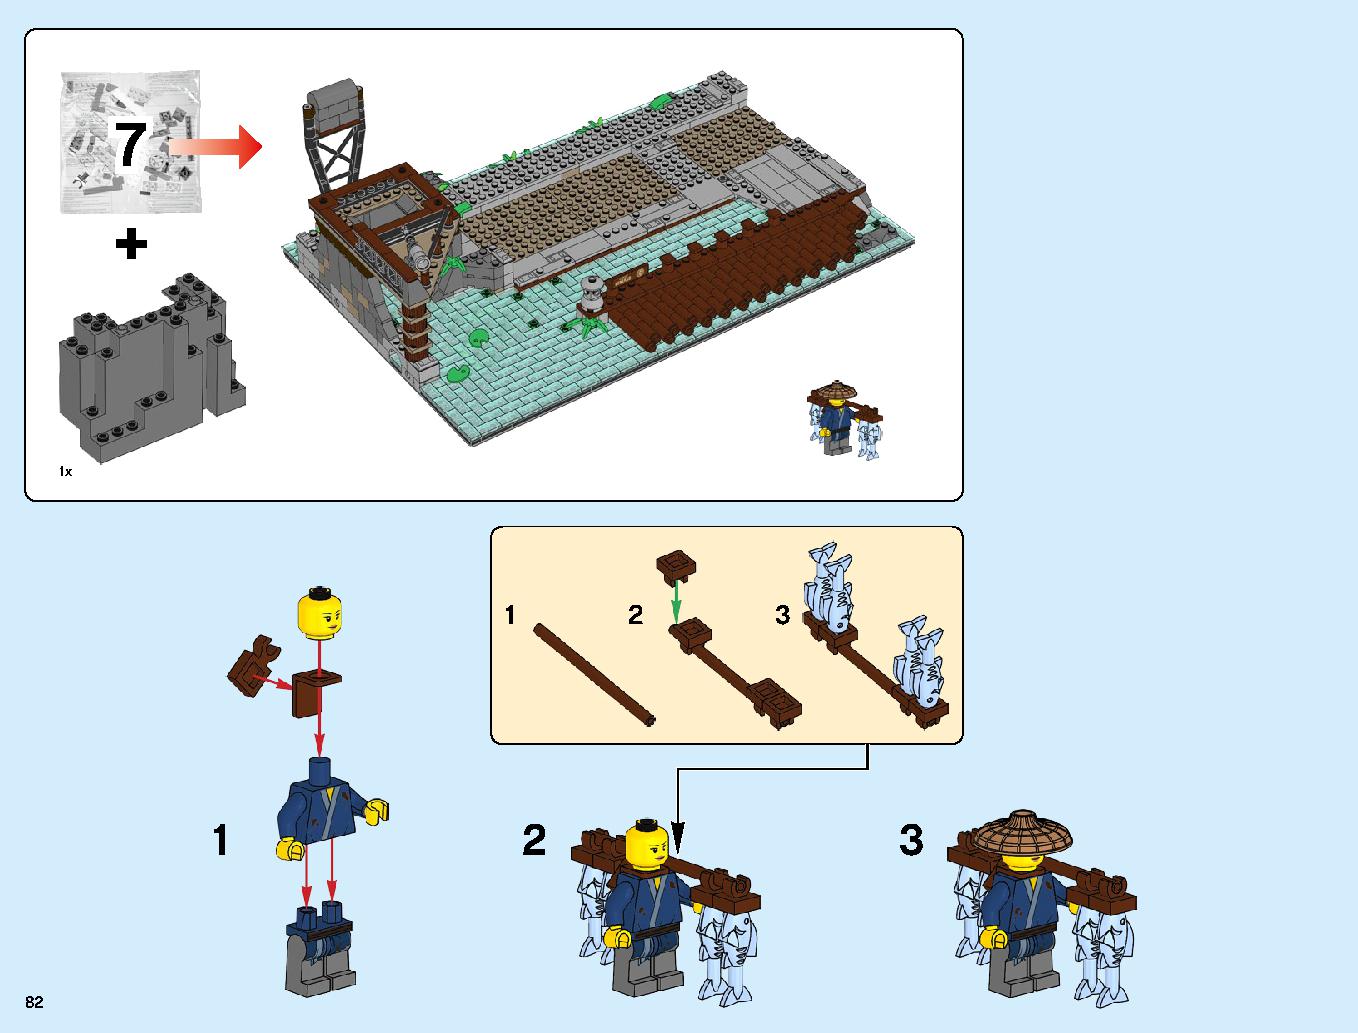 ニンジャゴーシティ・ポートパーク 70657 レゴの商品情報 レゴの説明書・組立方法 82 page